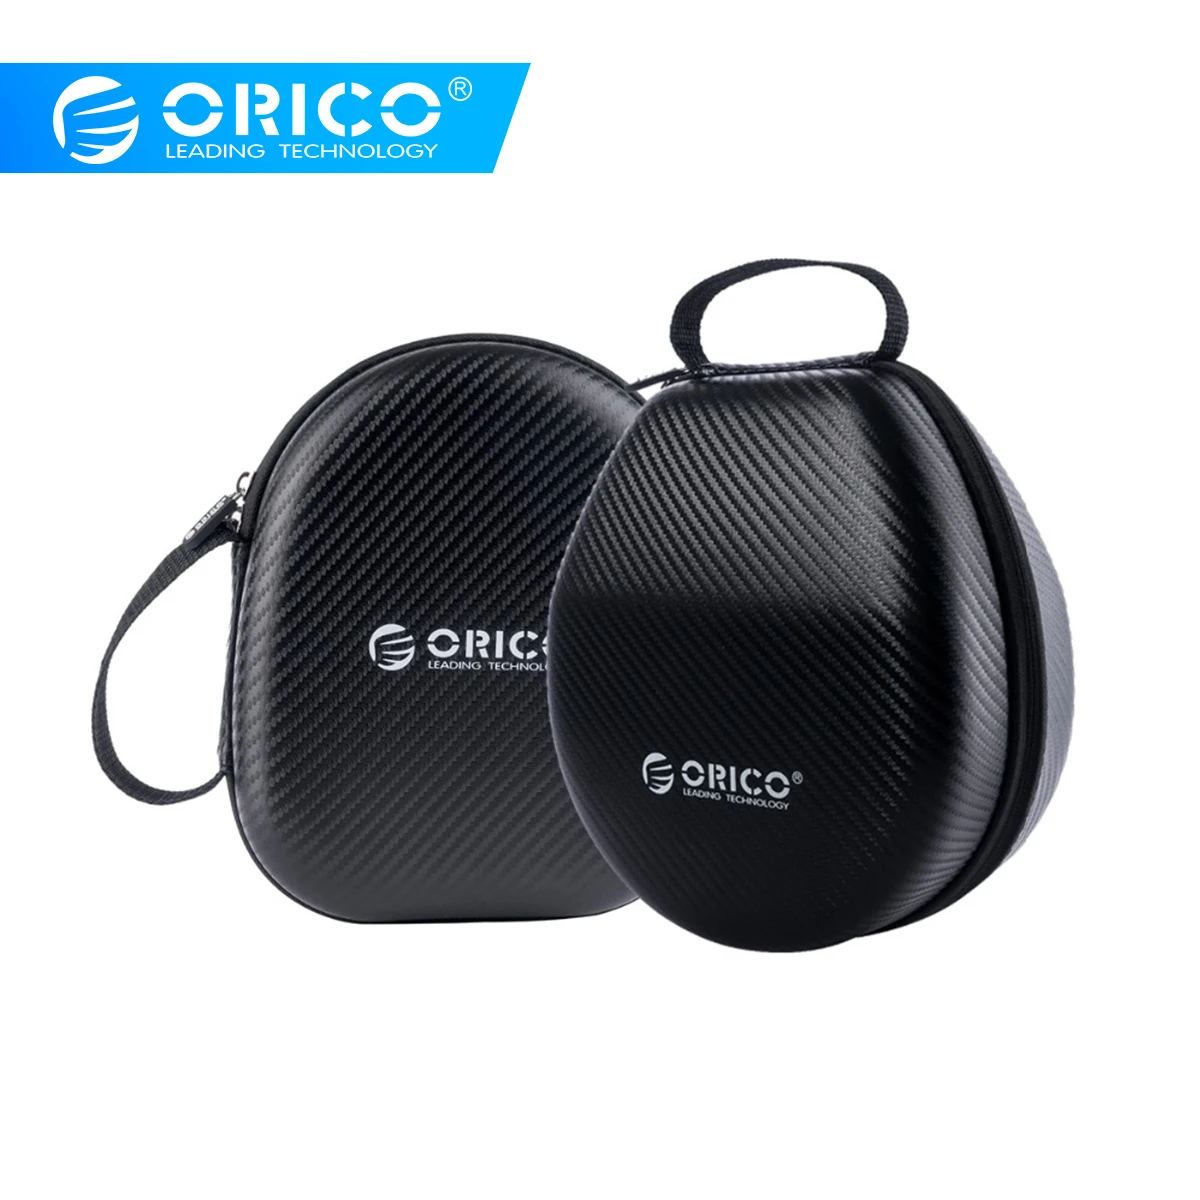 ORICO чехол для гарнитуры, переносная сумка для хранения, жесткий футляр для наушников, аксессуары для карт памяти, USB кабель, зарядное устройство, HDD